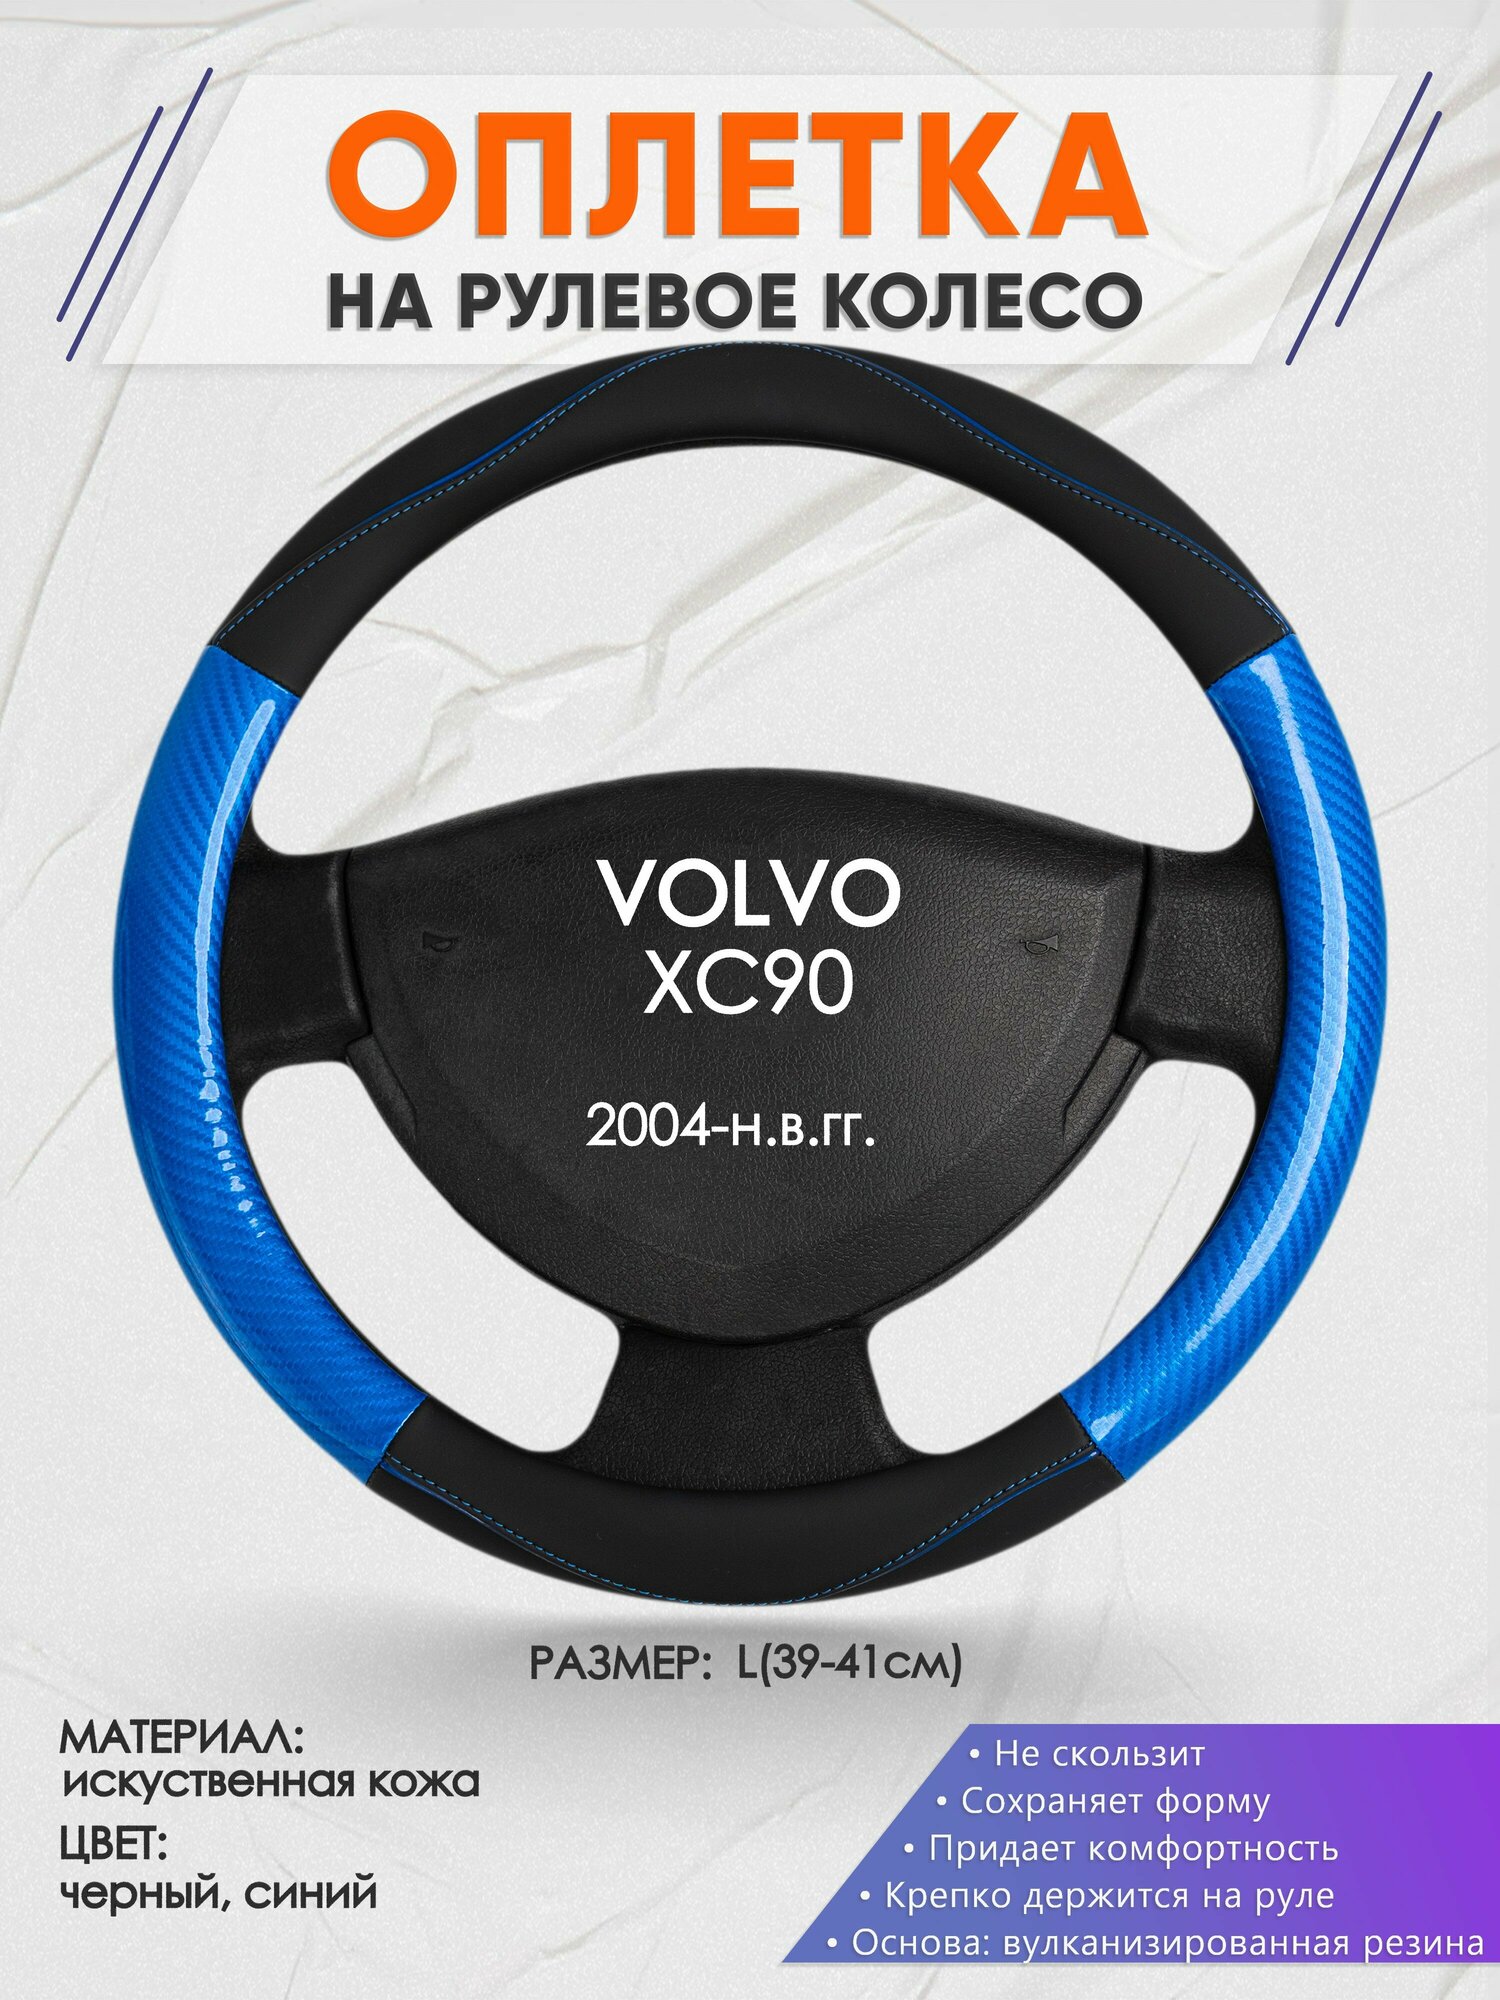 Оплетка на руль для VOLVO XC90(Вольво иксс90) 2004-н.в., L(39-41см), Искусственная кожа 17